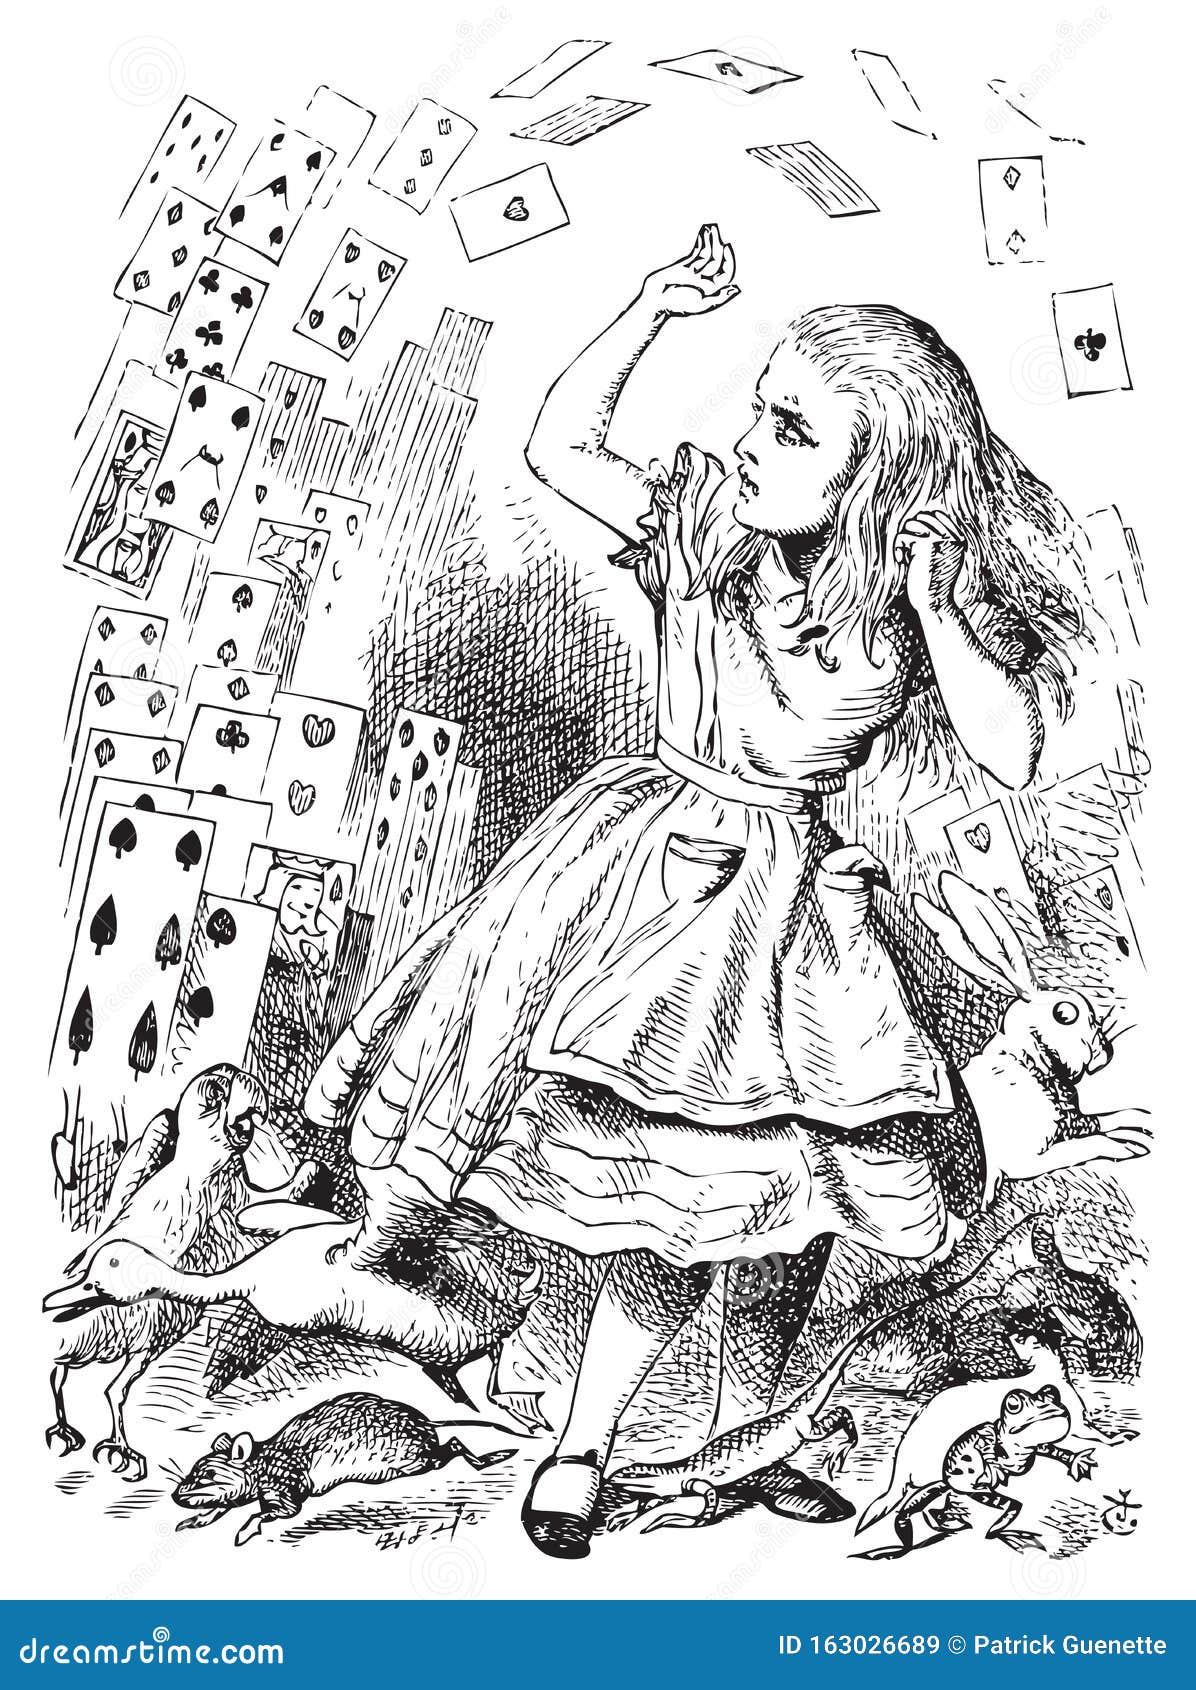 Foto de Conjunto De Cartas De Jogar De Alice No País Das Maravilhas 1898 15  e mais fotos de stock de Alice no País das Maravilhas - iStock